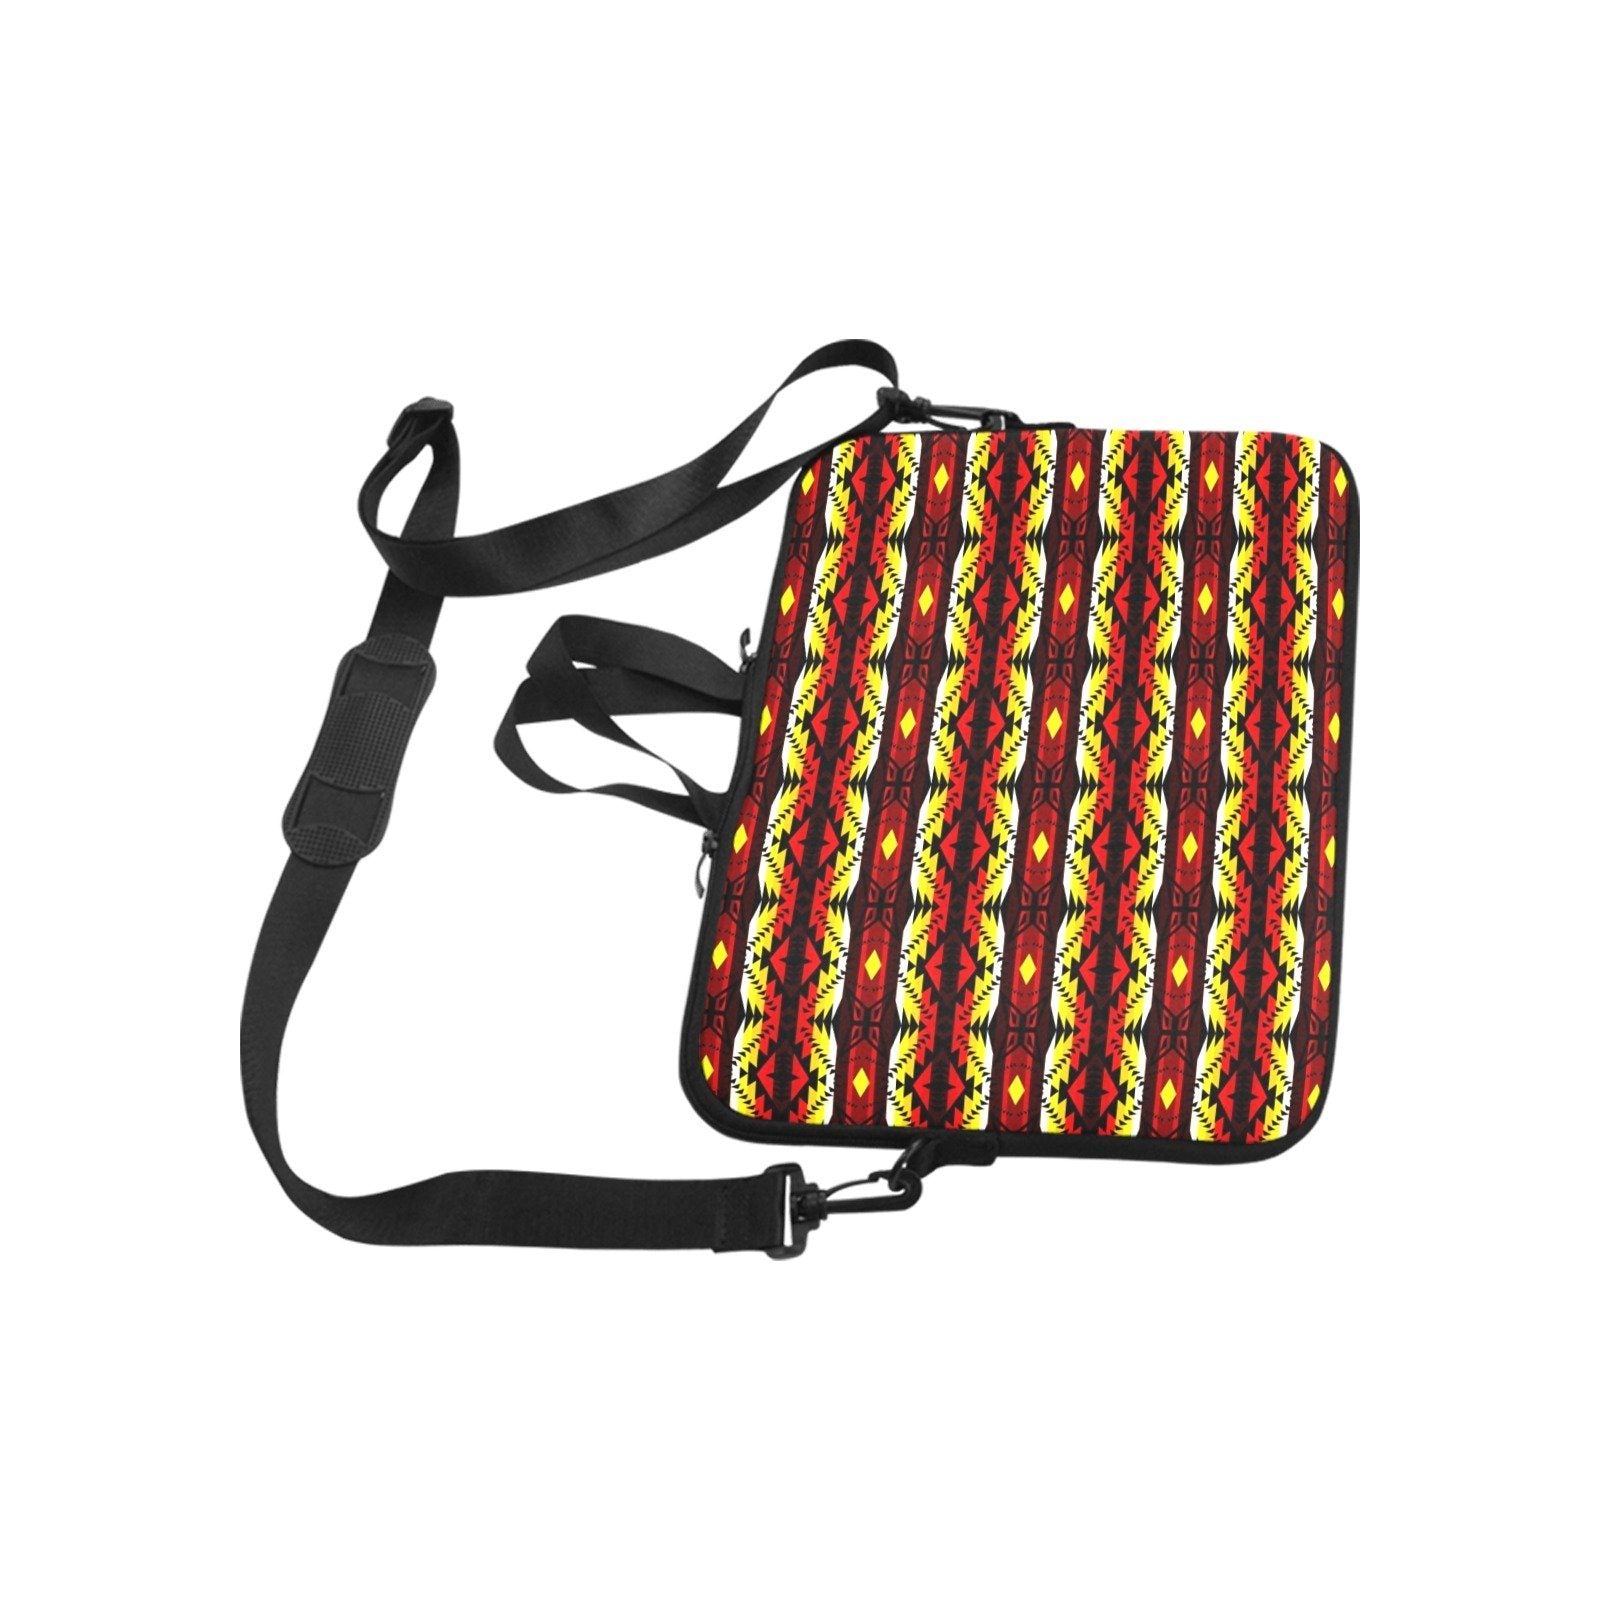 Canyon War Party Laptop Handbags 11" bag e-joyer 